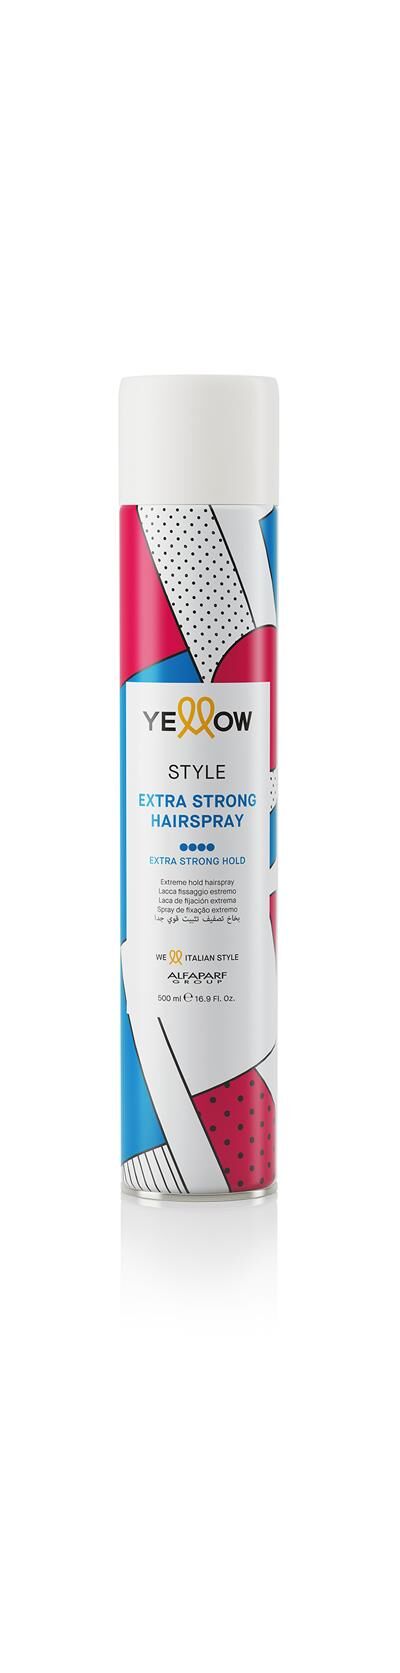 Лак для волос экстрасильной фиксации Yellow STYLE, Объём, мл: 500, Разработано, год: 2020, фото 